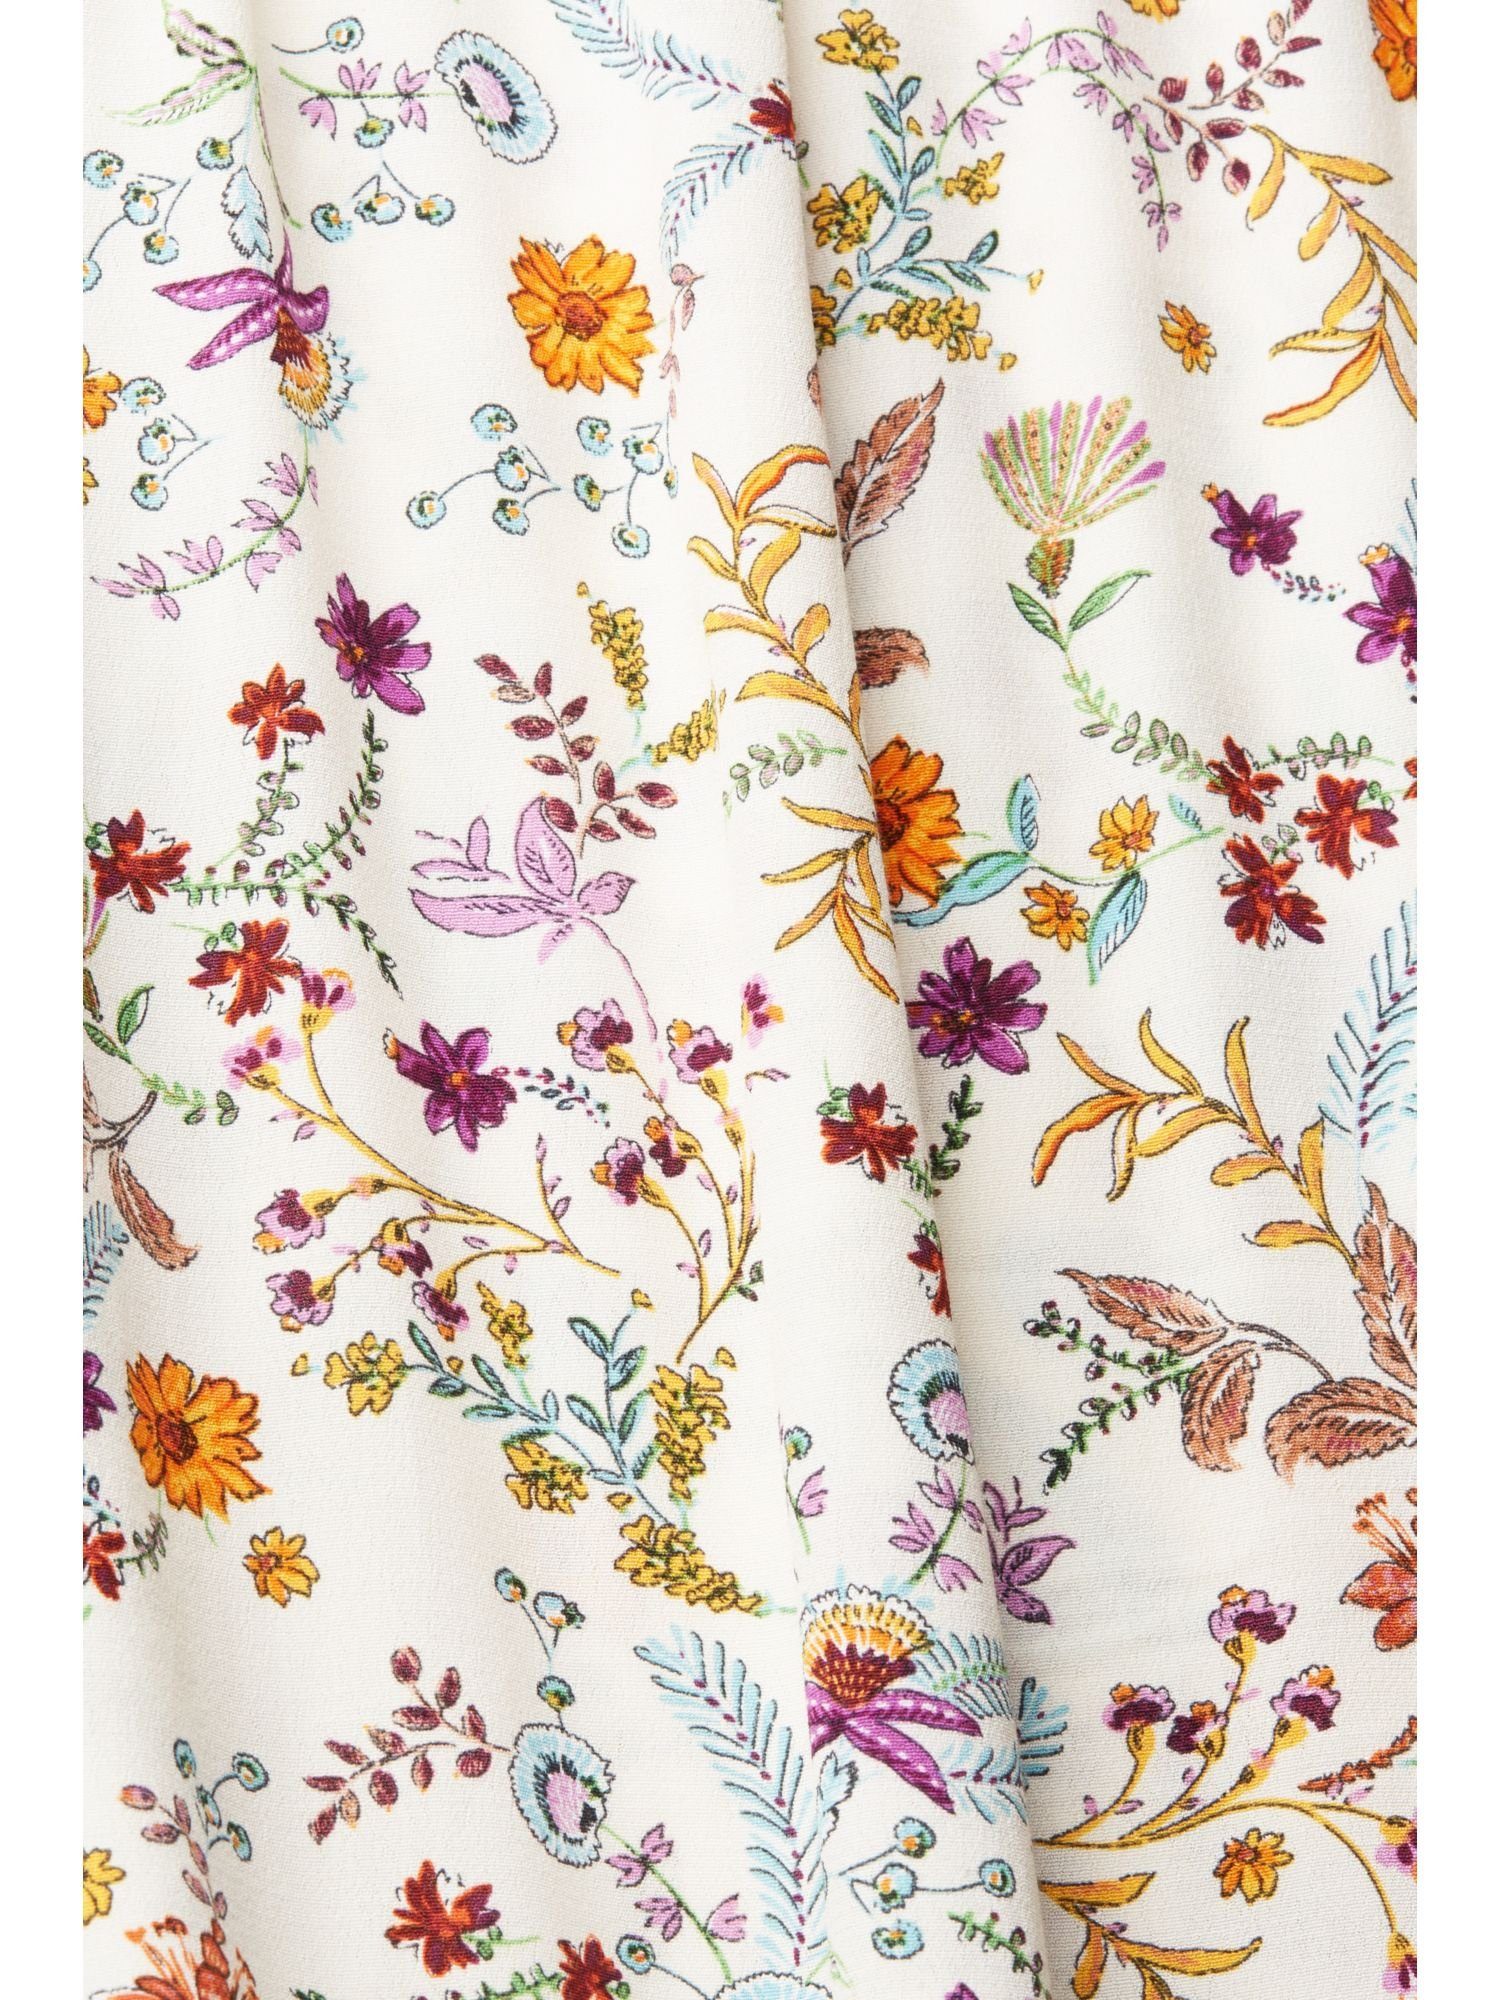 Damen Röcke Esprit Minirock Floral gemusterter Midirock mit Rüschenkante